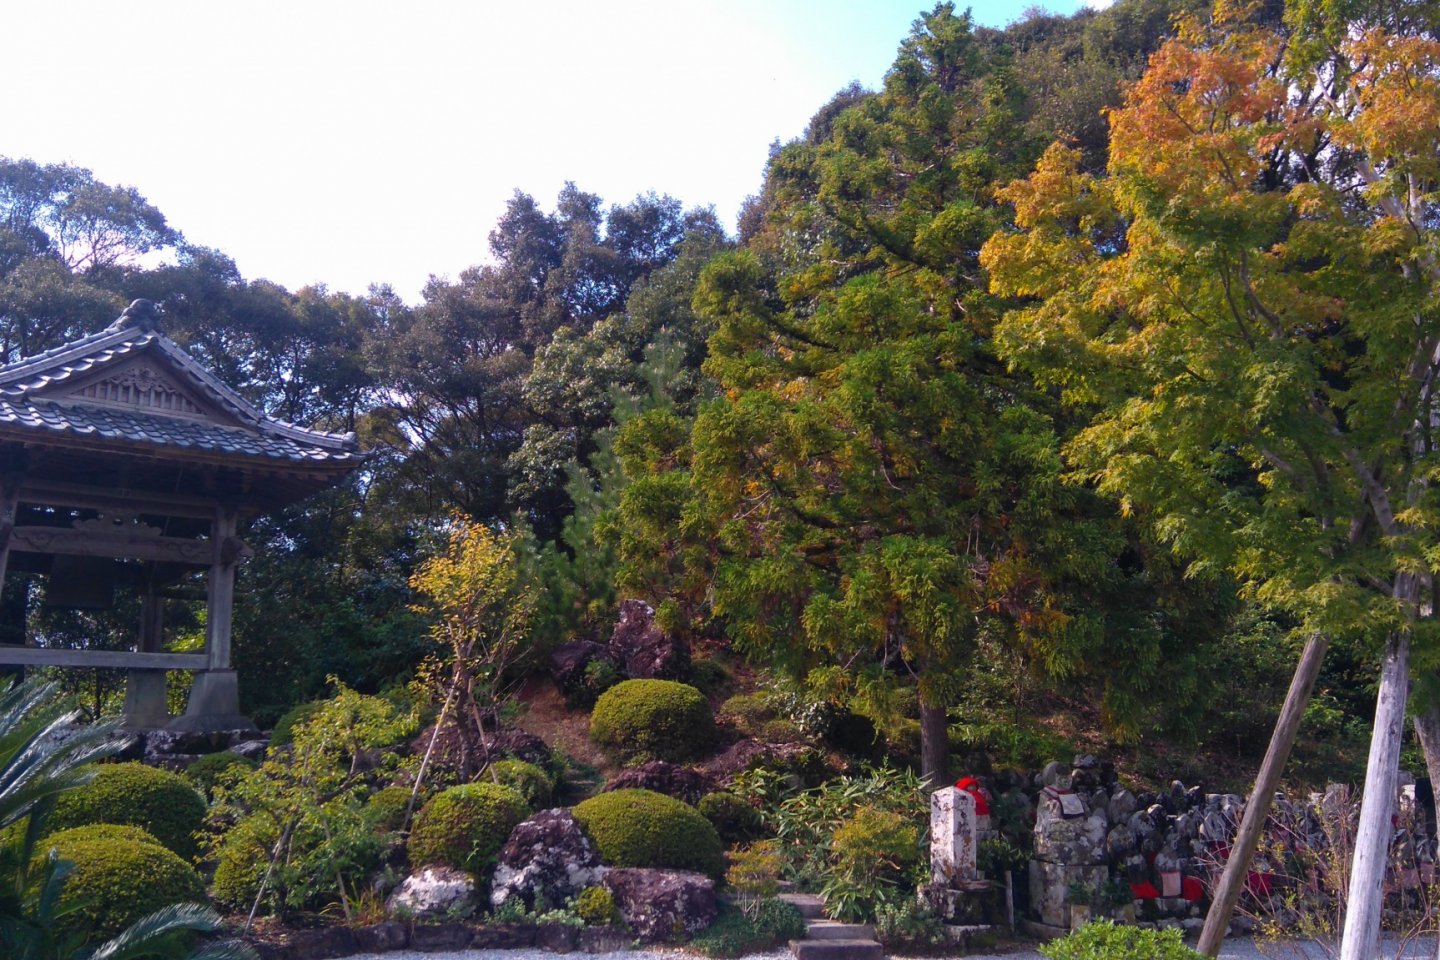 Forest bath, Dainichiji